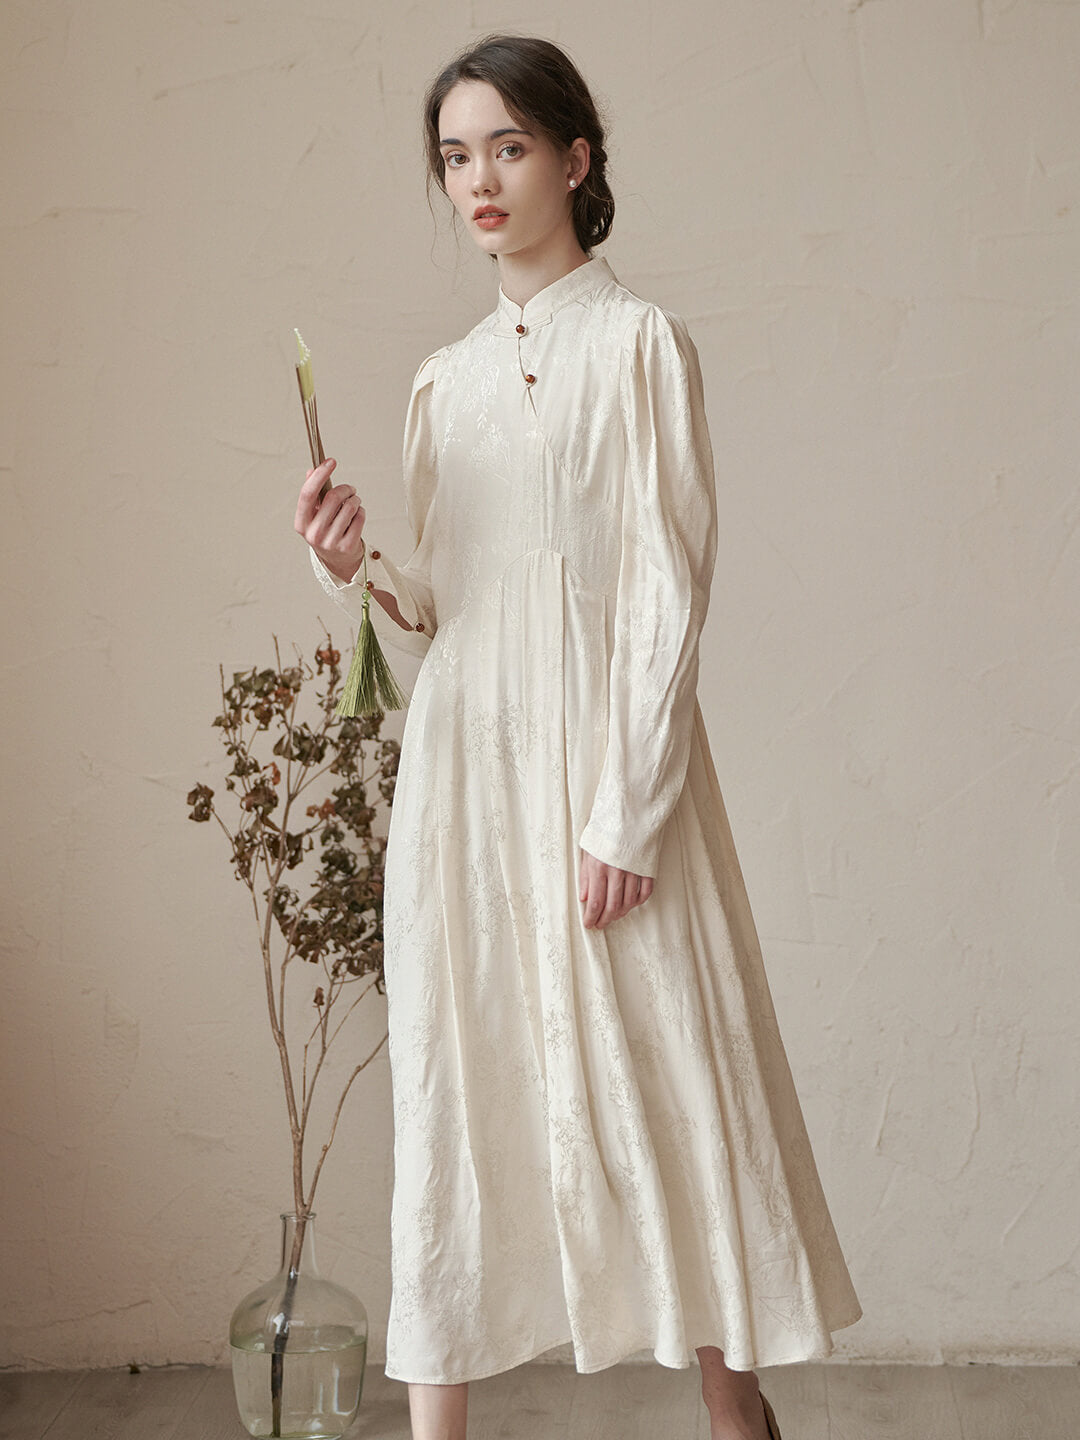 新中式白色斜襟花瓣暗纹洋裝